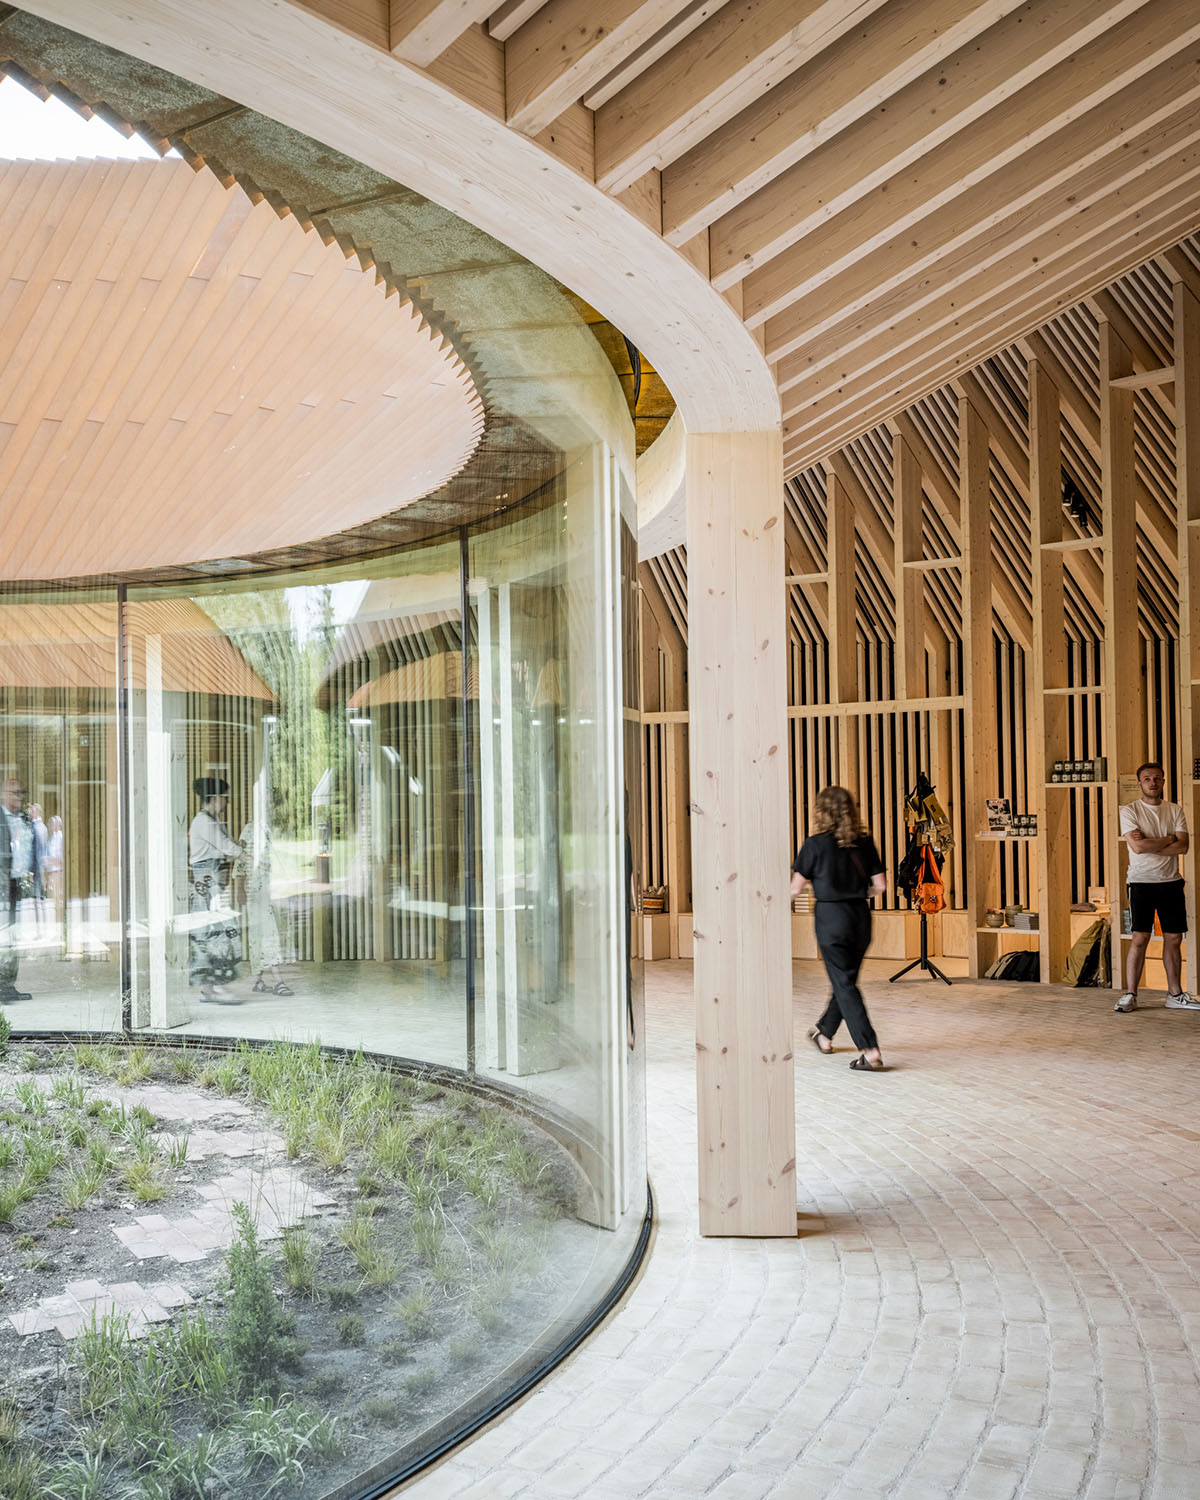 BIG завершает строительство нового музея беженцев в Дании корпусом из кортеновской стали с мягким изгибом 